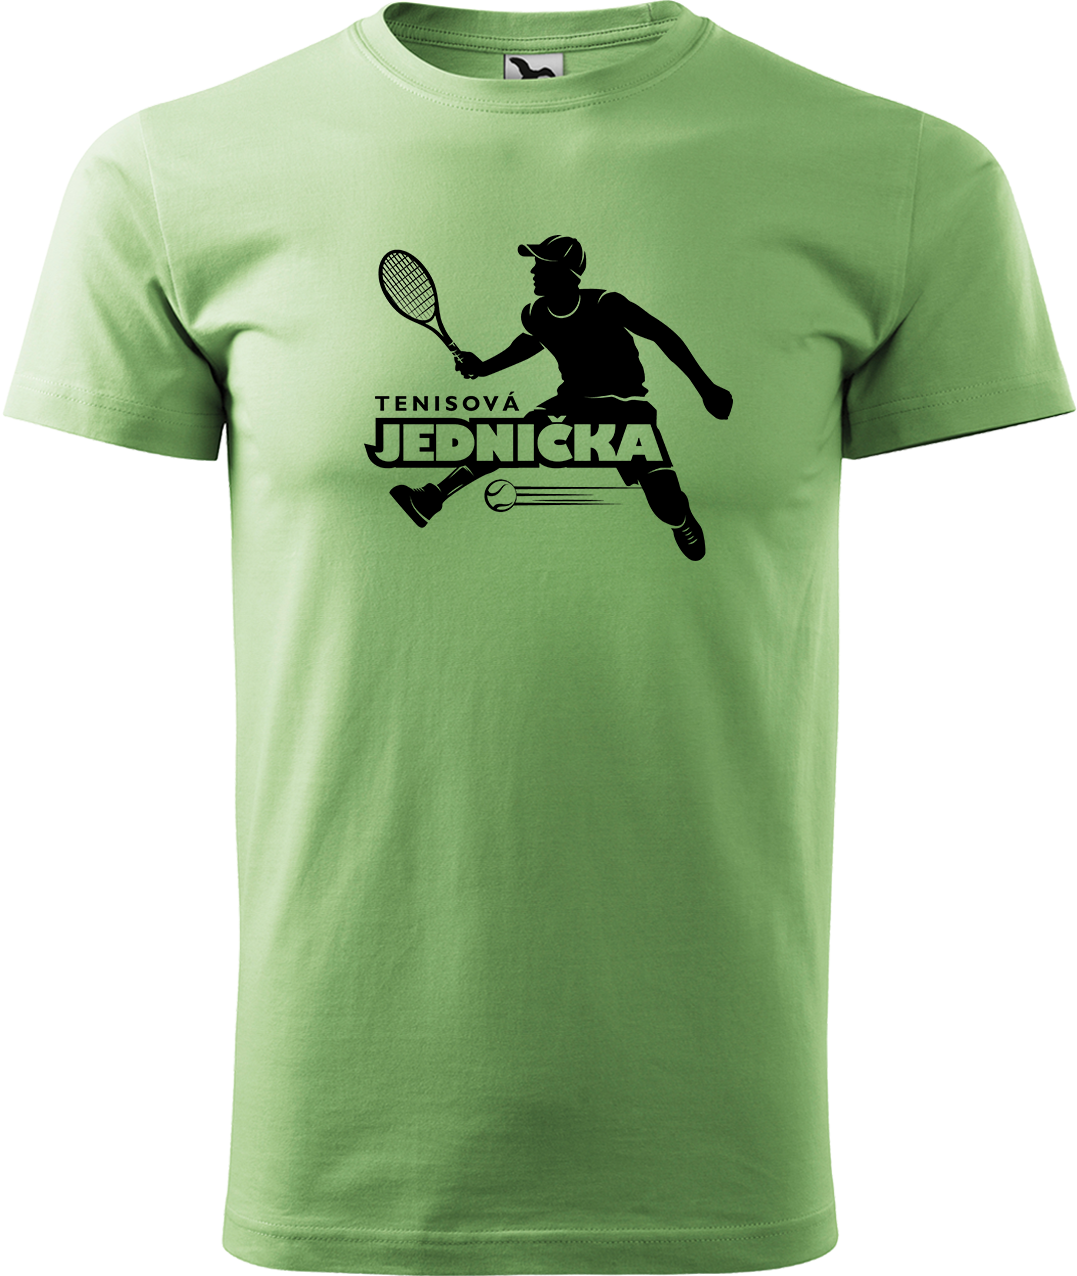 Tenisové tričko - Tenisová jednička Velikost: 3XL, Barva: Trávově zelená (39)